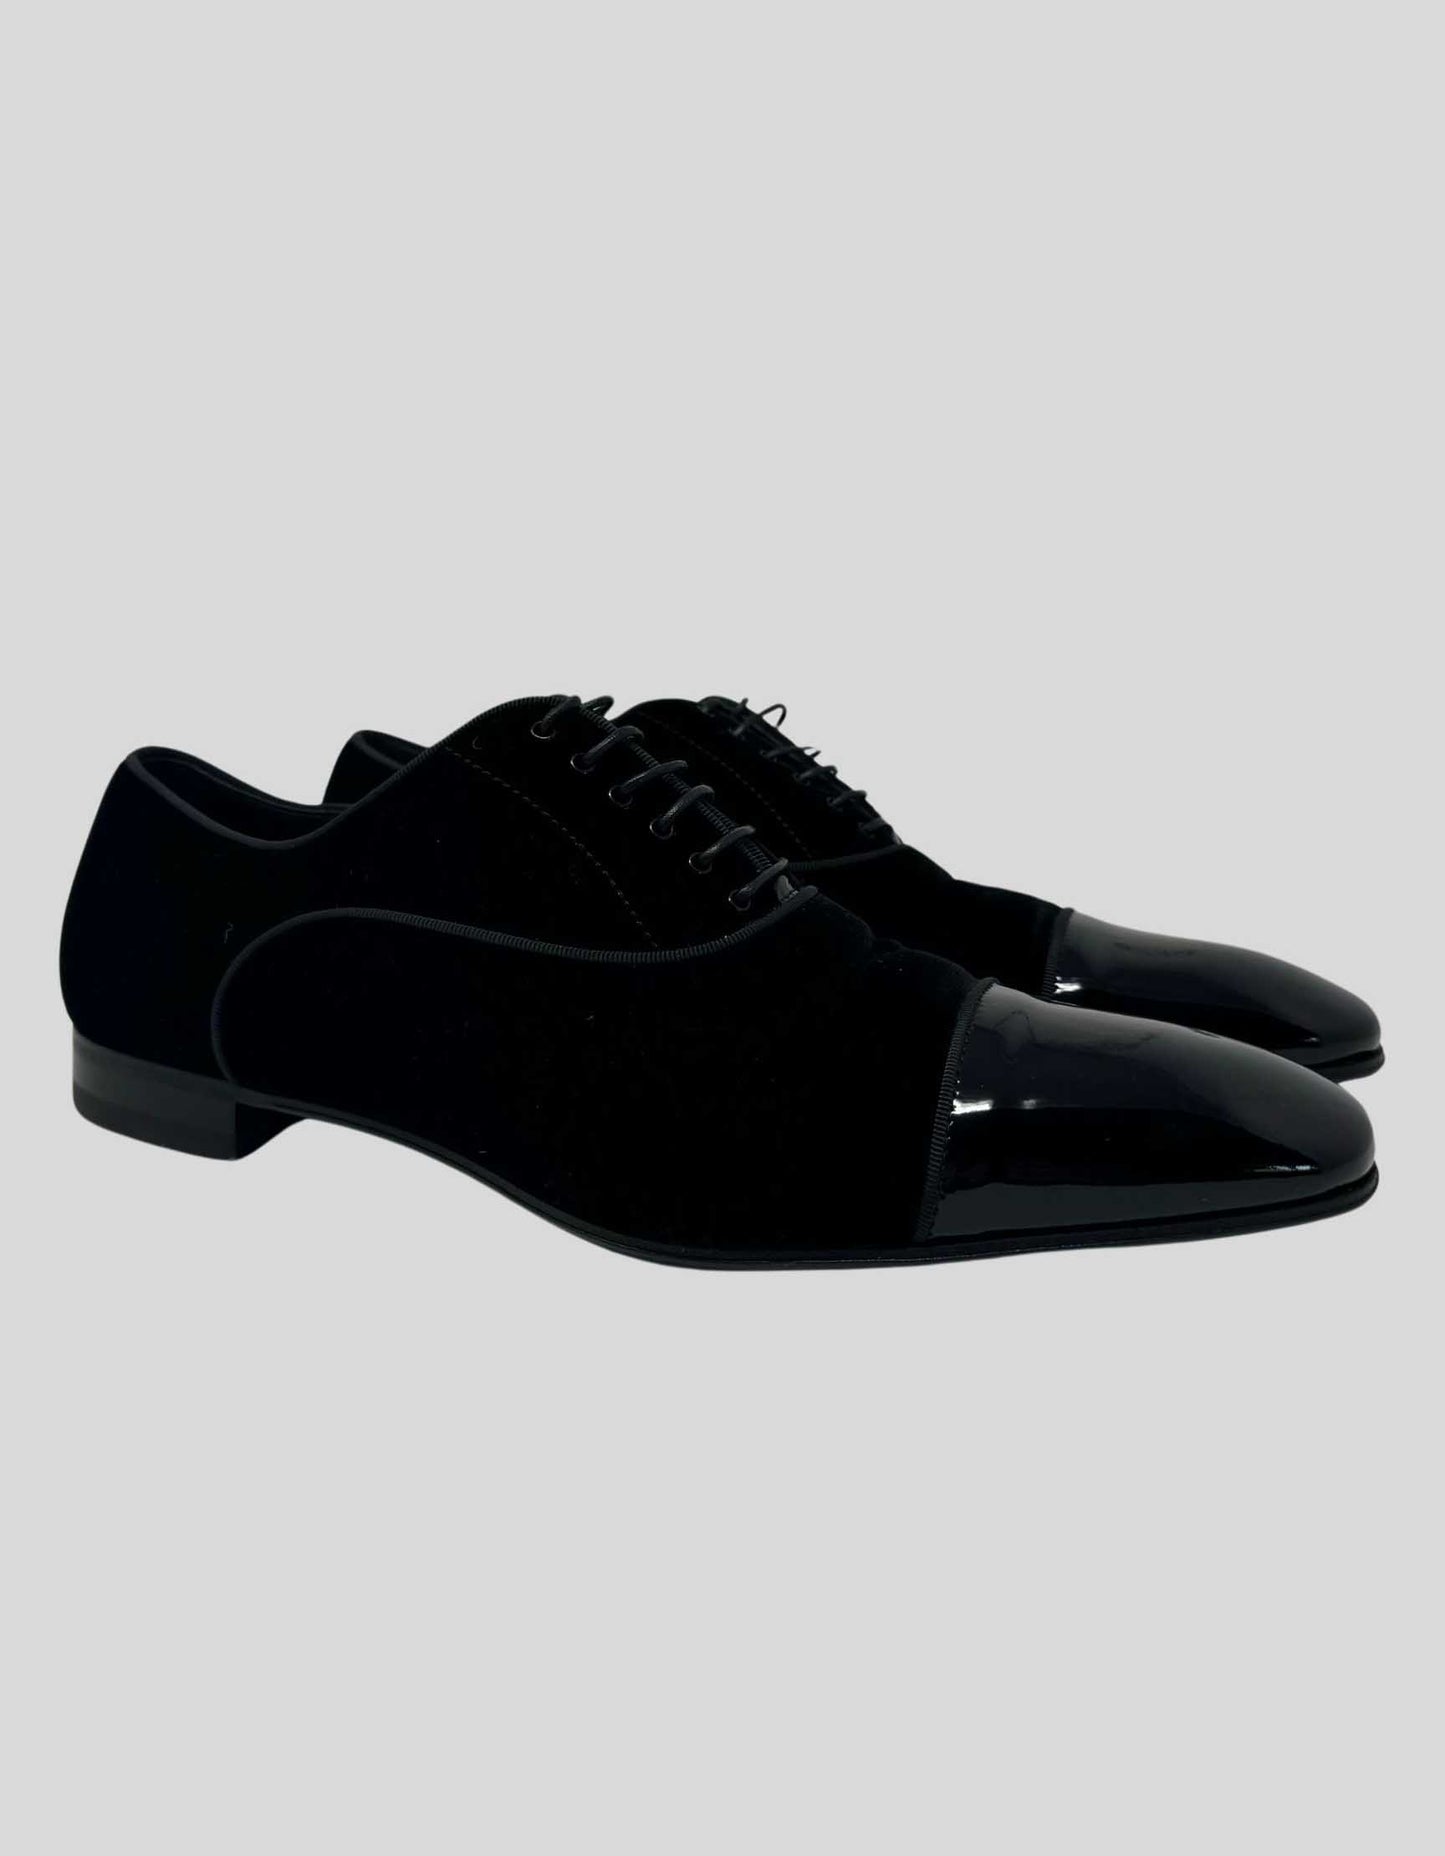 PAUL STUART Formal Lace-Up Shoes - 10 M US